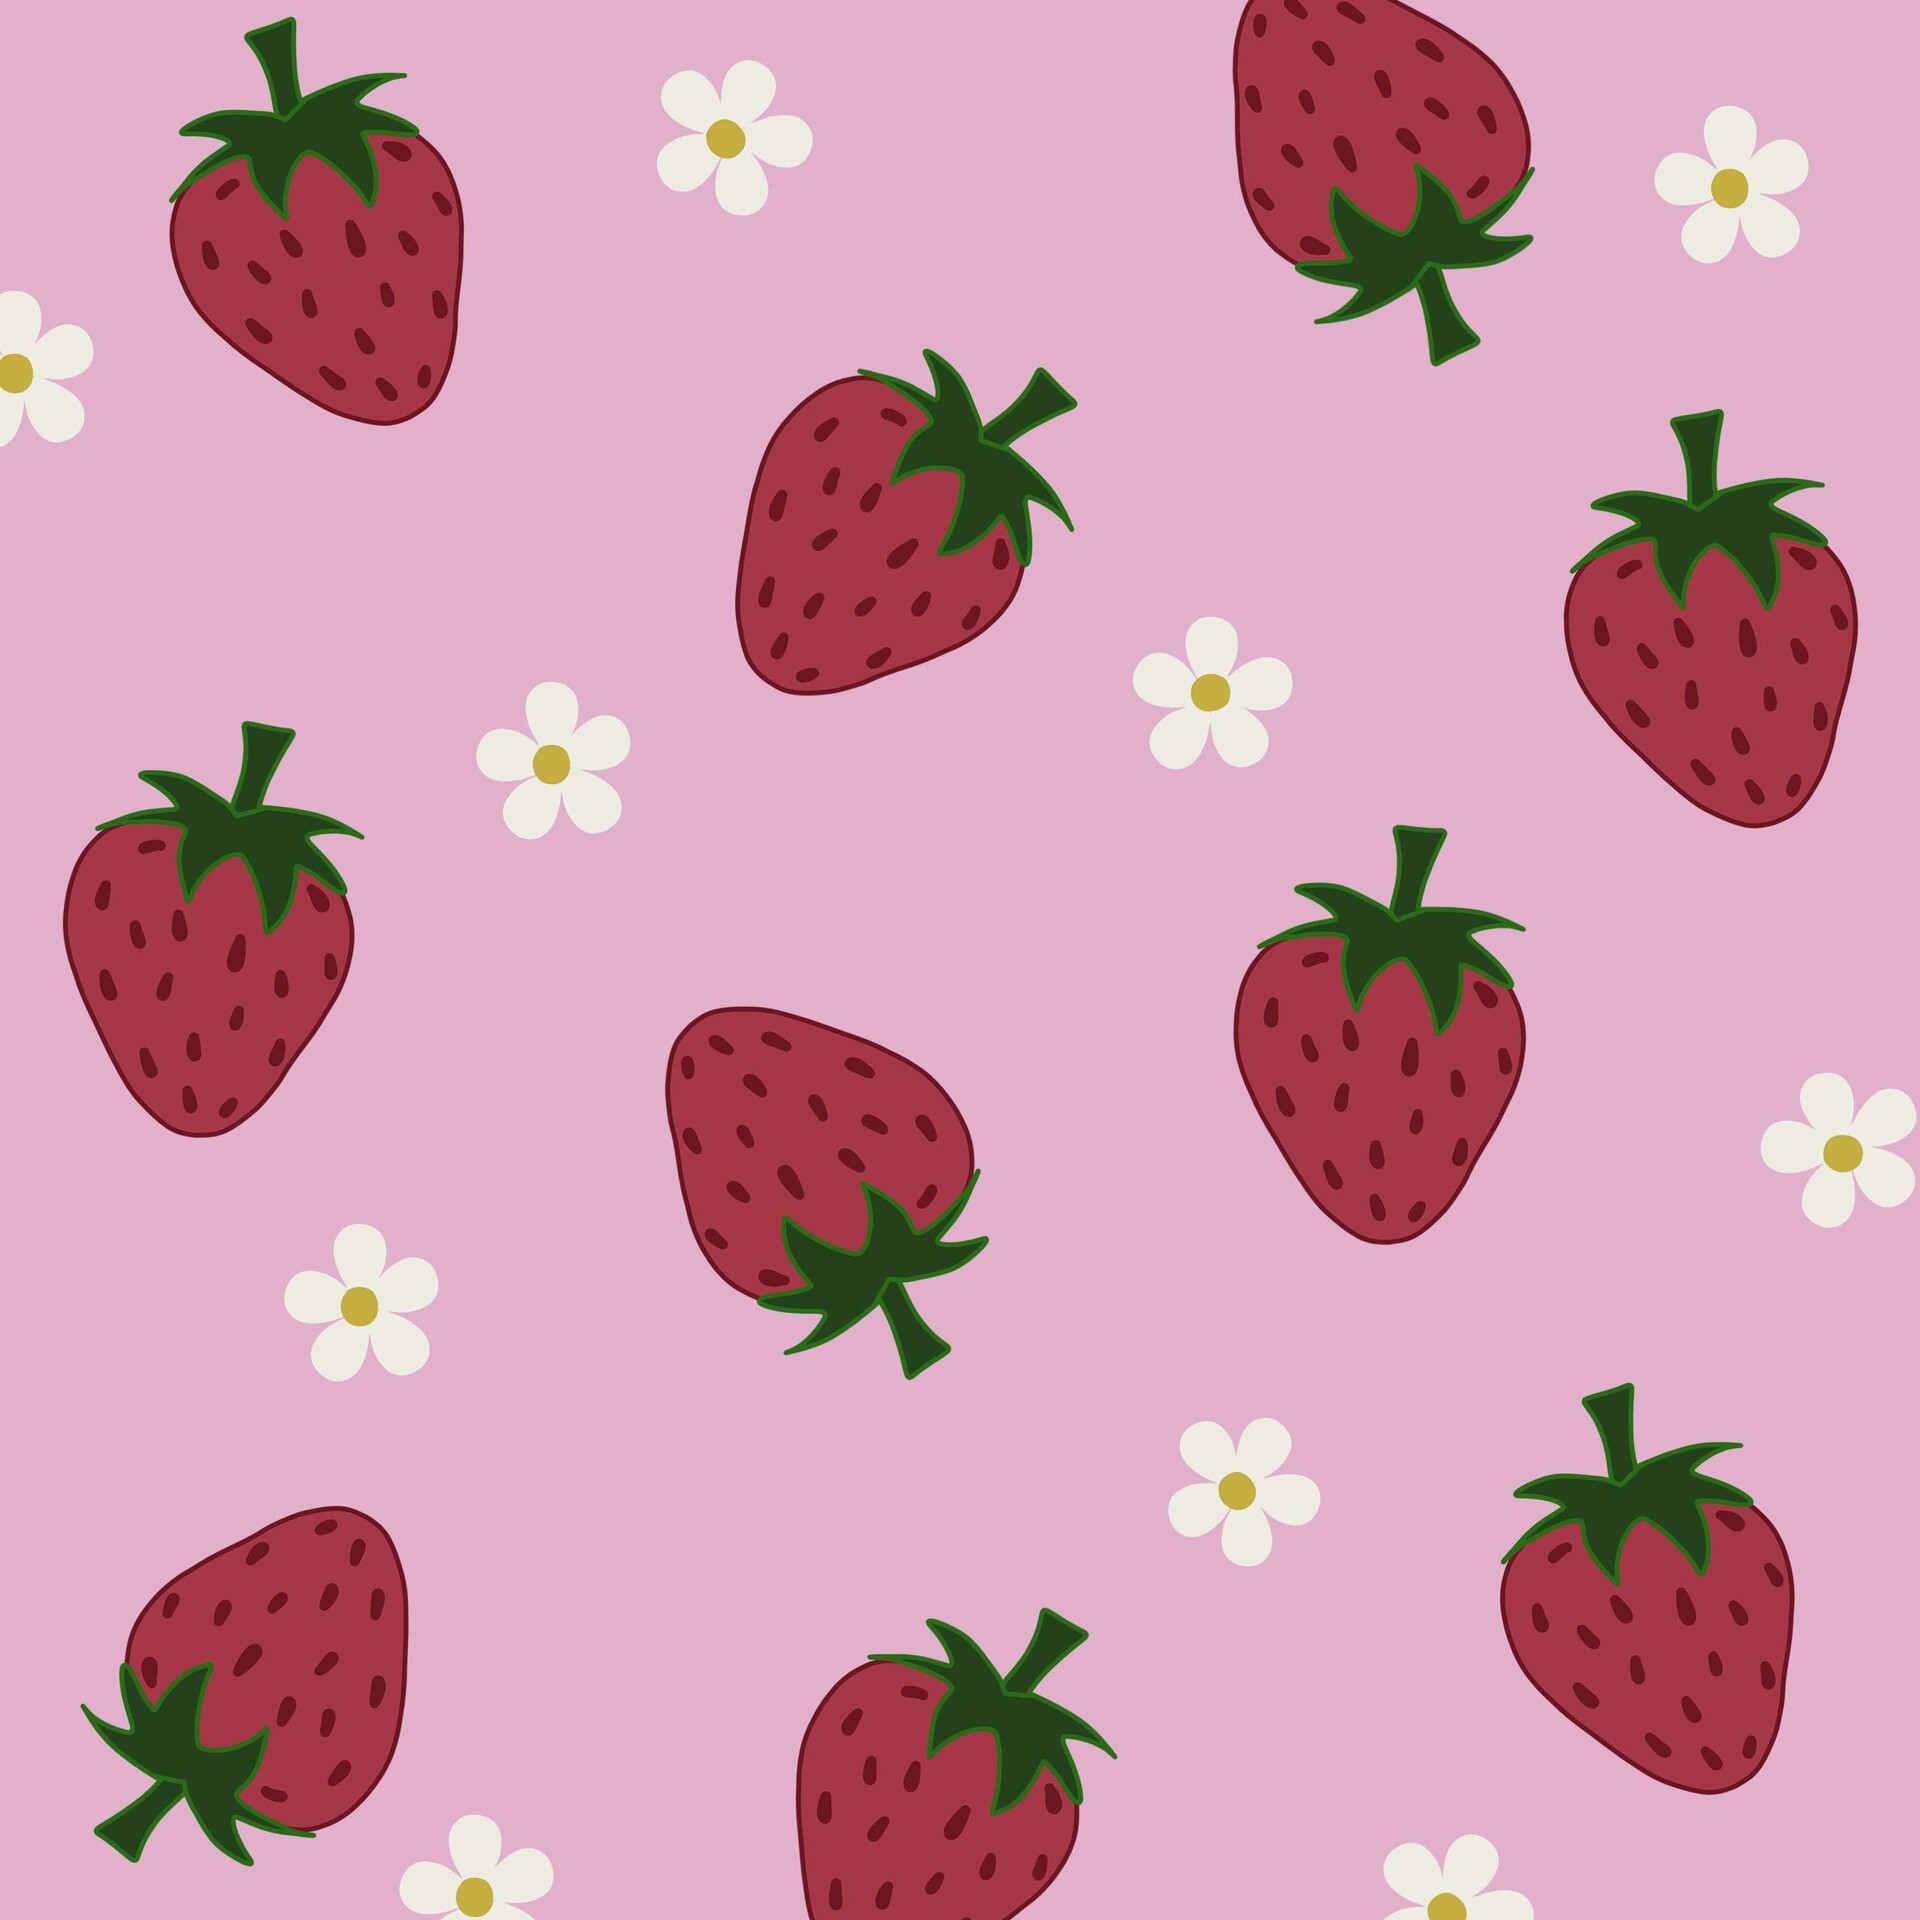 ArtStation - Strawberries, yumm